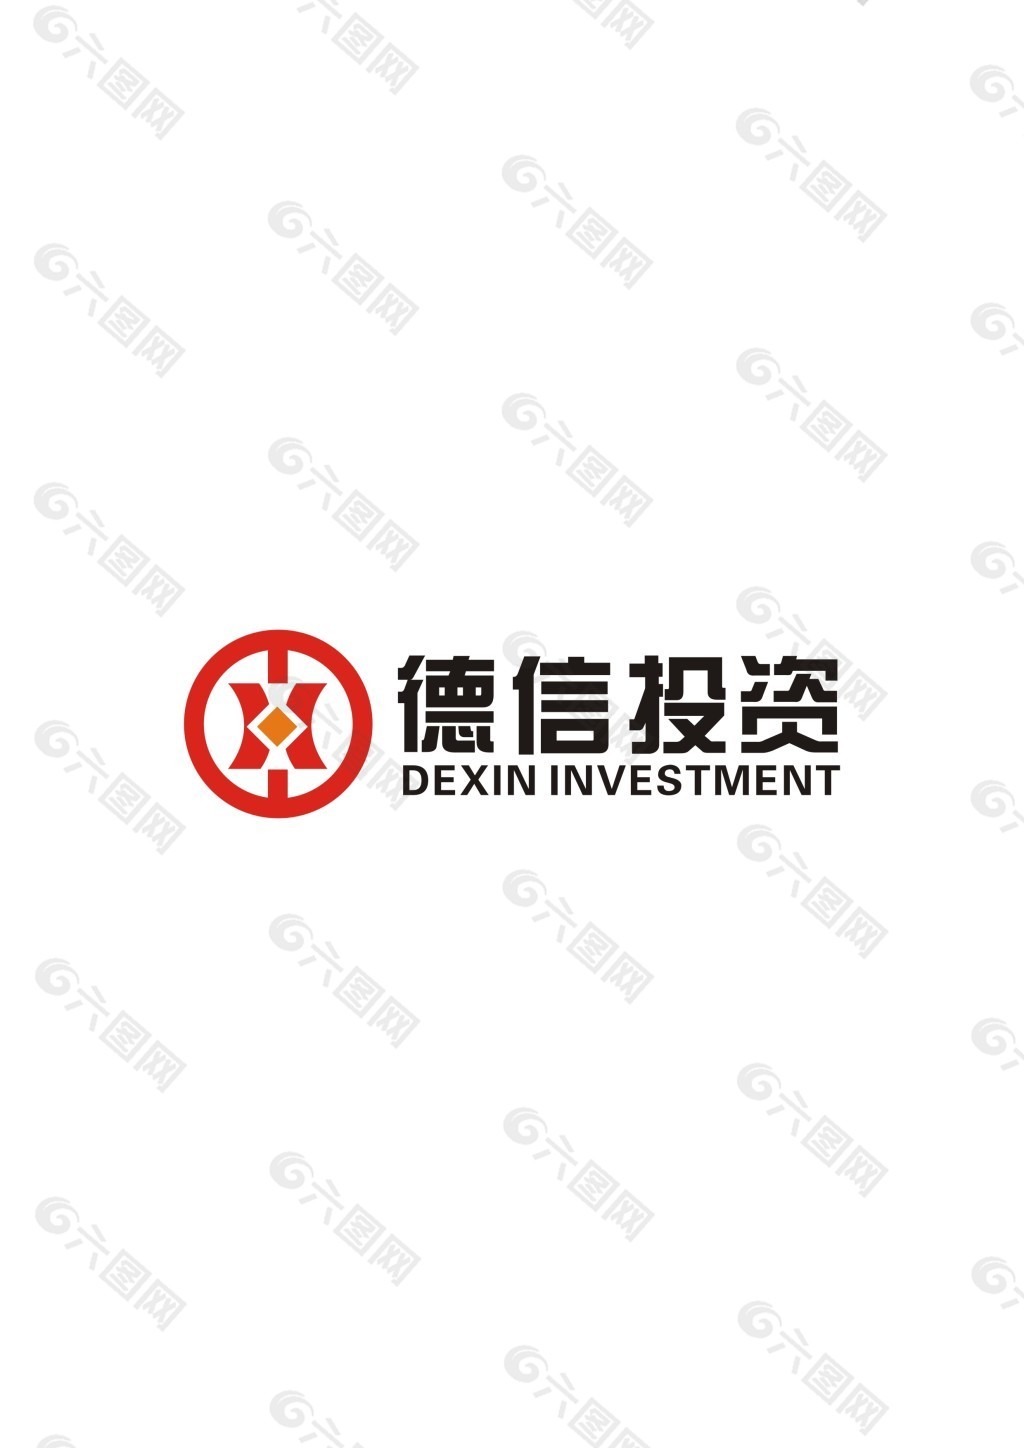 投资公司logo标志设计